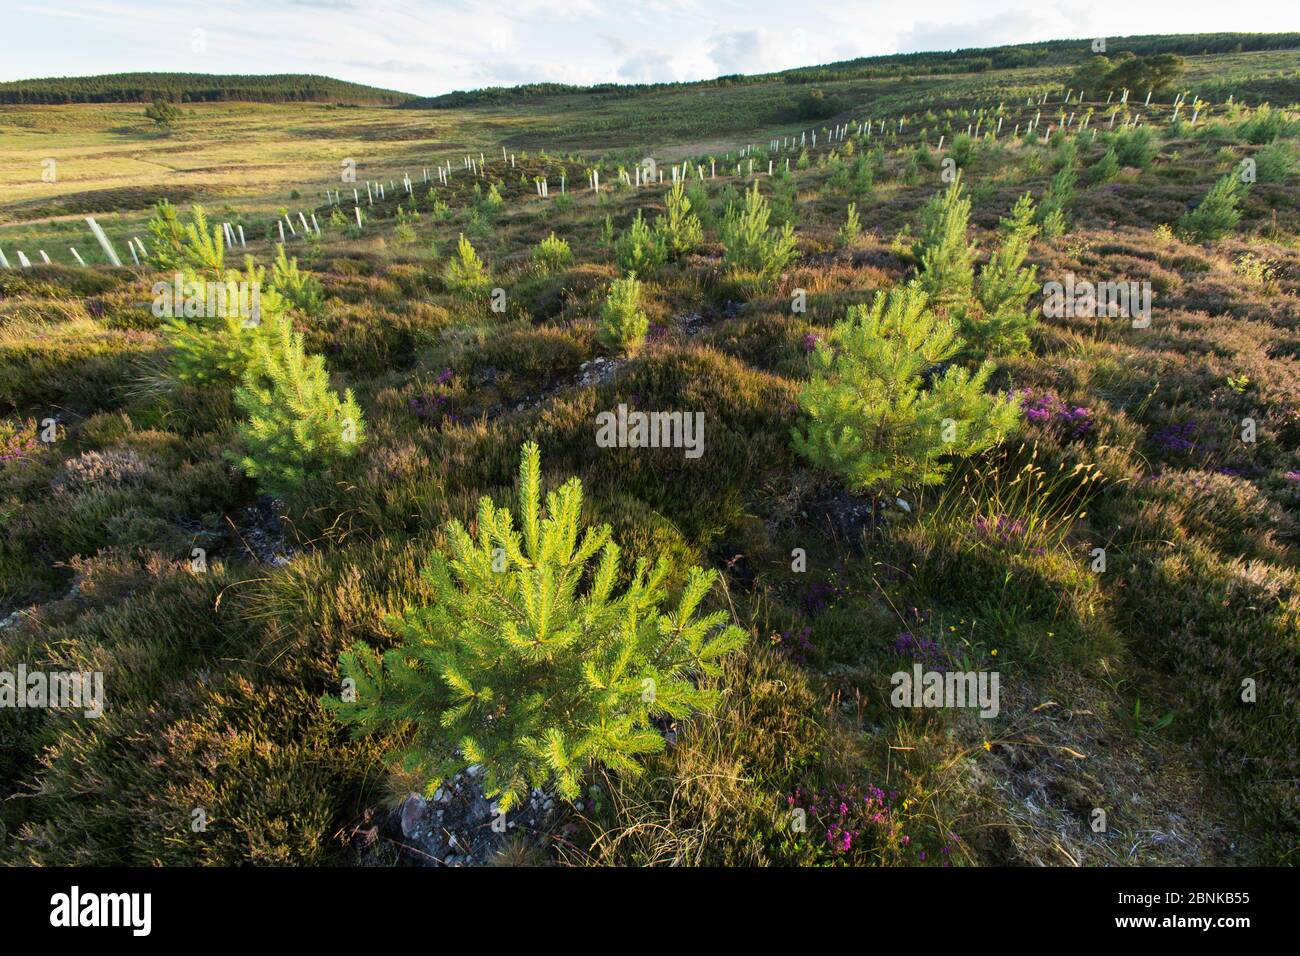 Gepflanzte Kiefernspelzen (Pinus sylvestris) wachsen in einem Gebiet von nwly bepflanzten Wäldern in der Nähe von Duthill, Cairngorms National Park, Schottland, Großbritannien, Juli 2016 Stockfoto